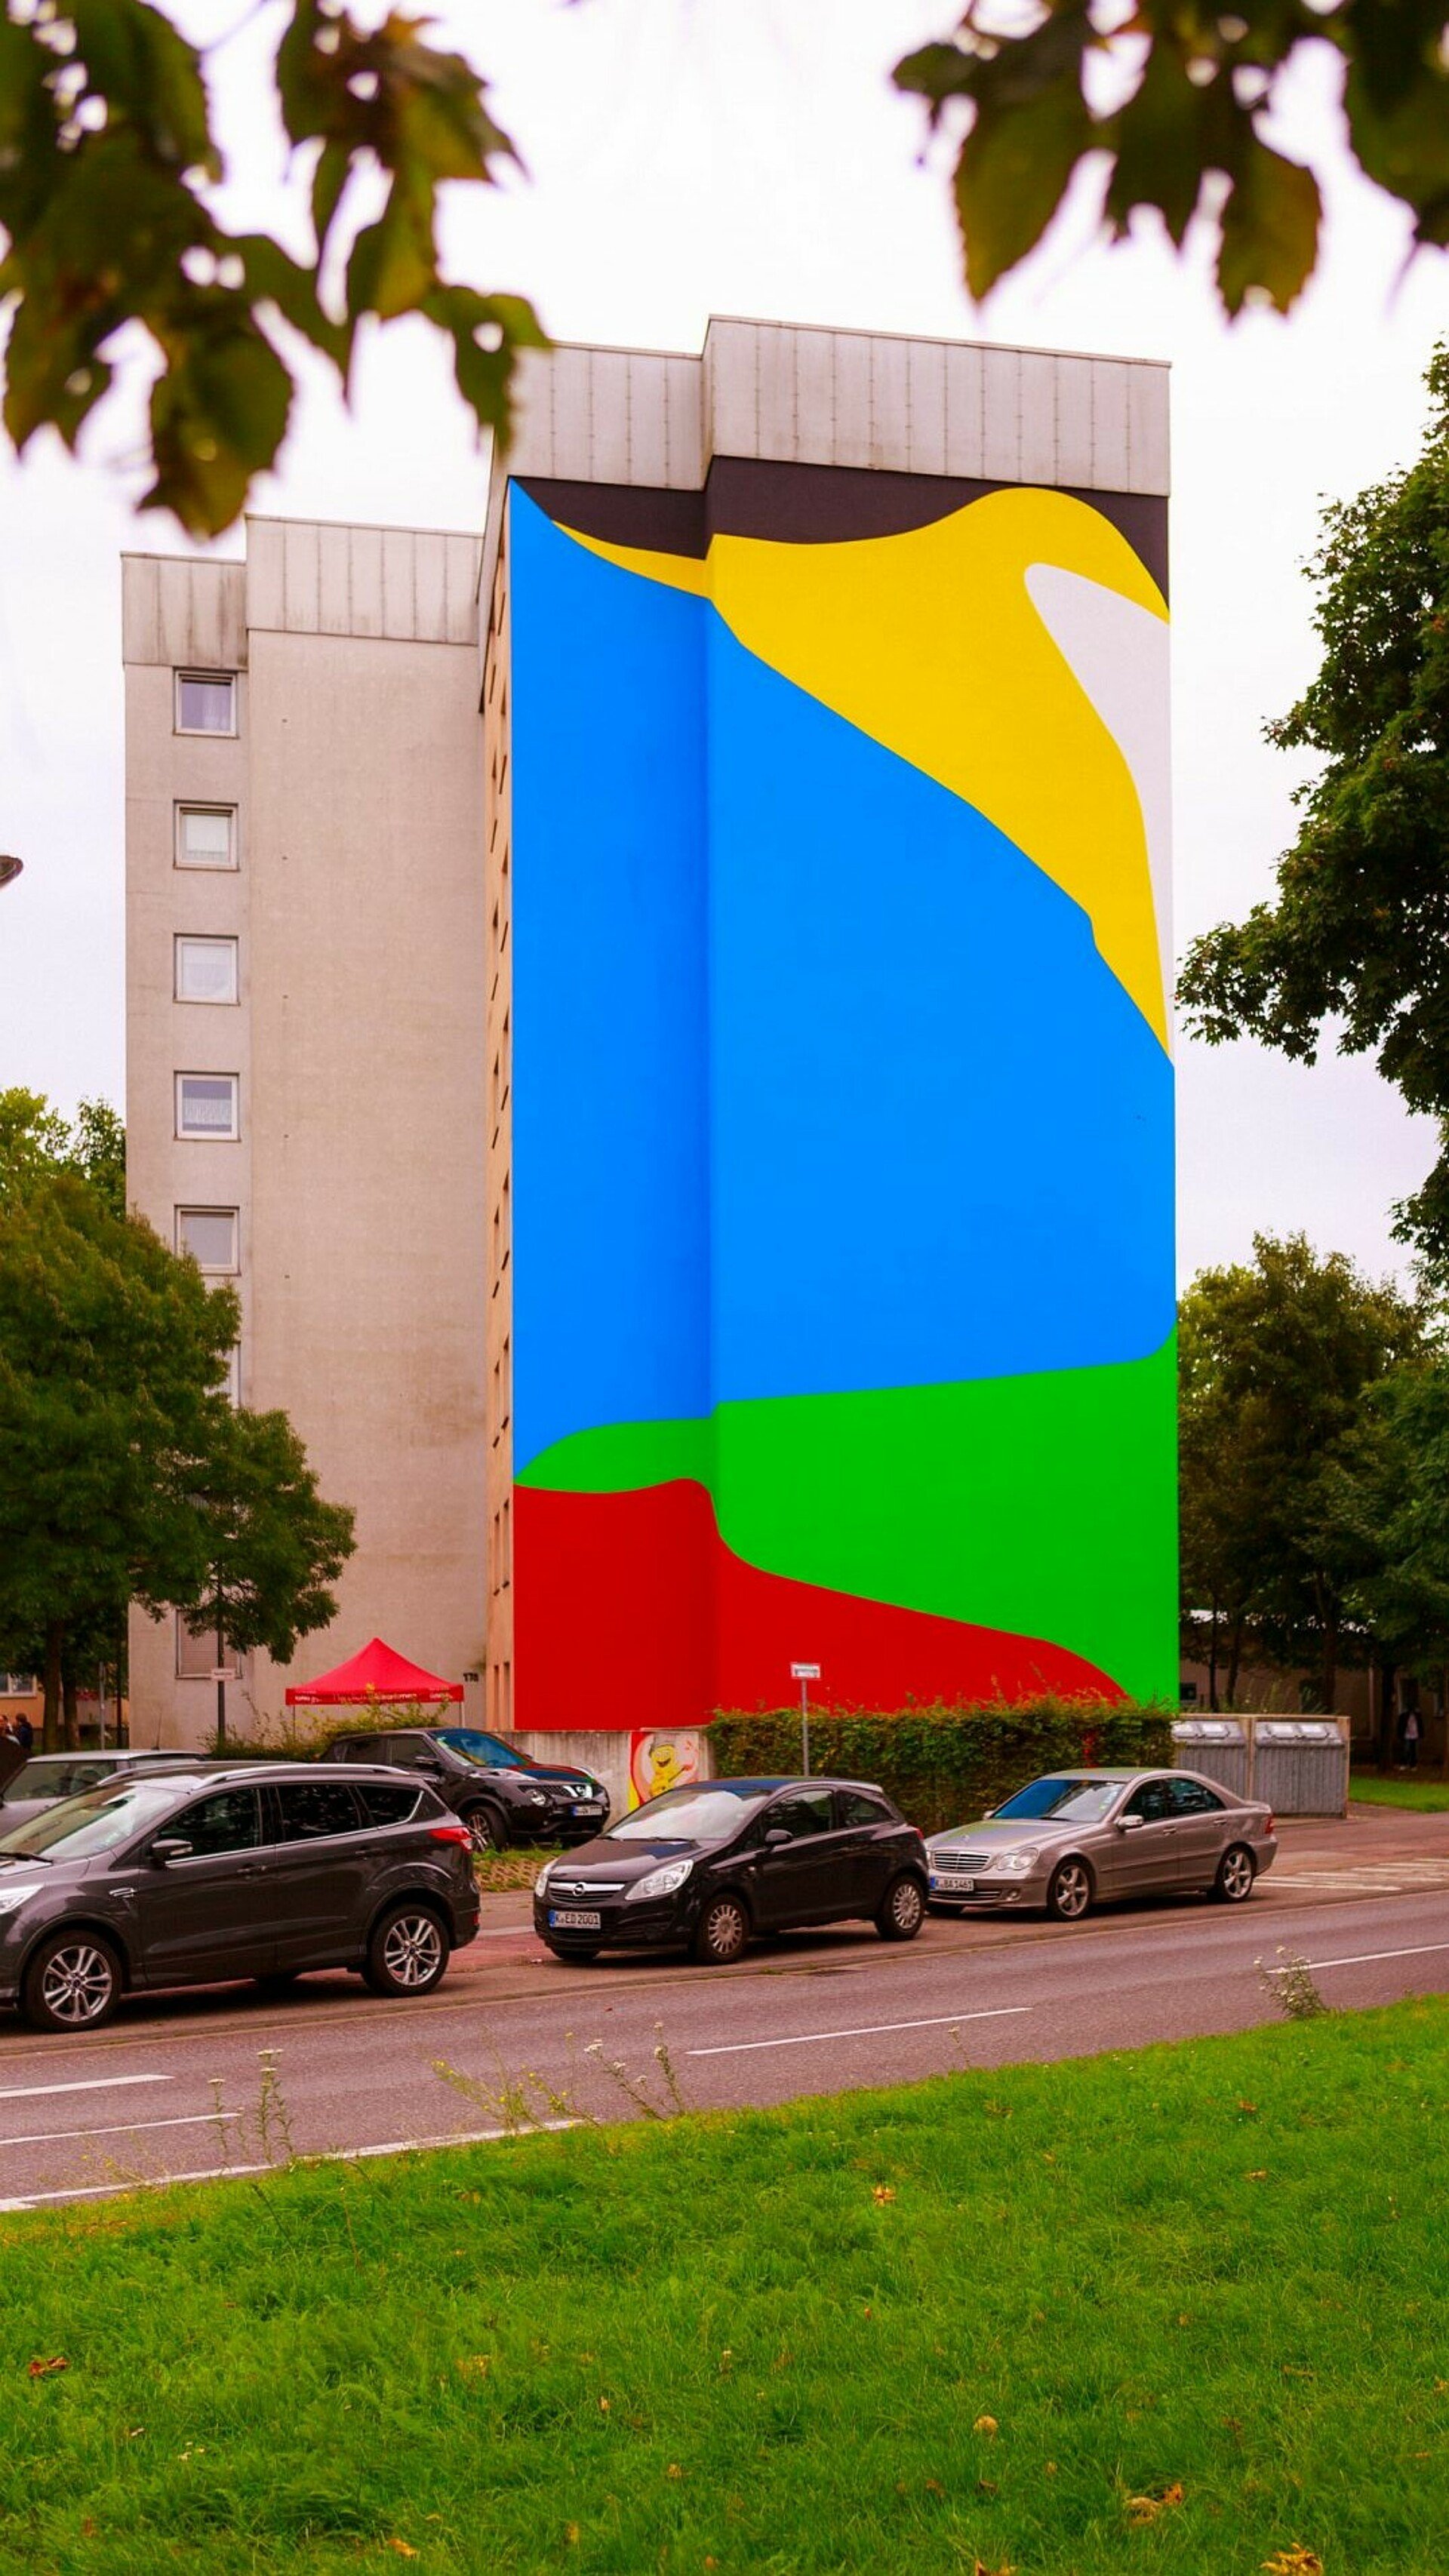 Mural mit kräftigen Farben in Mülheim